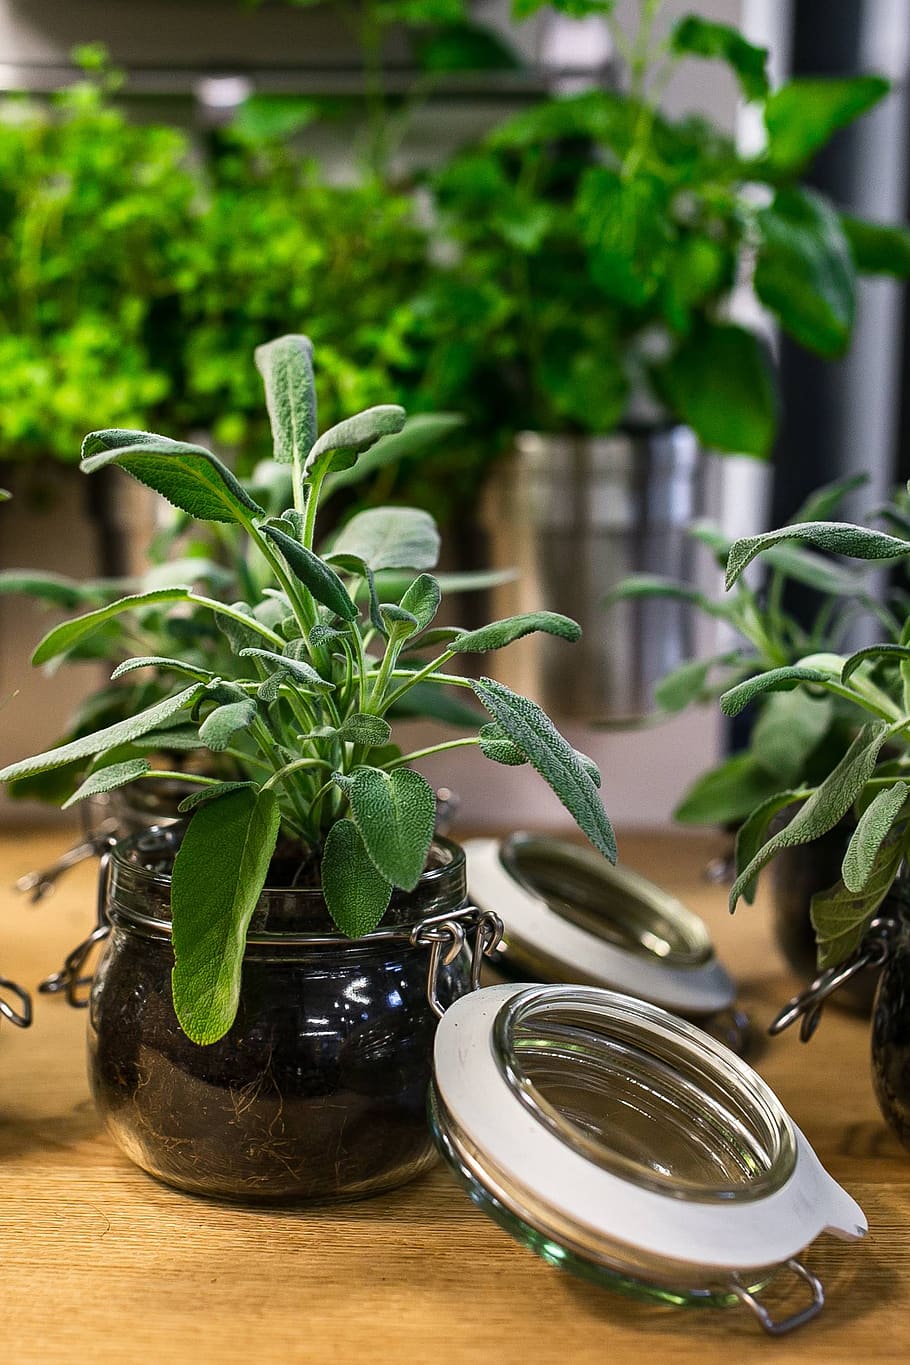 mesa, planta, vaso, jarra, Verde, plantas, vidro, jarras, folha, parte da planta